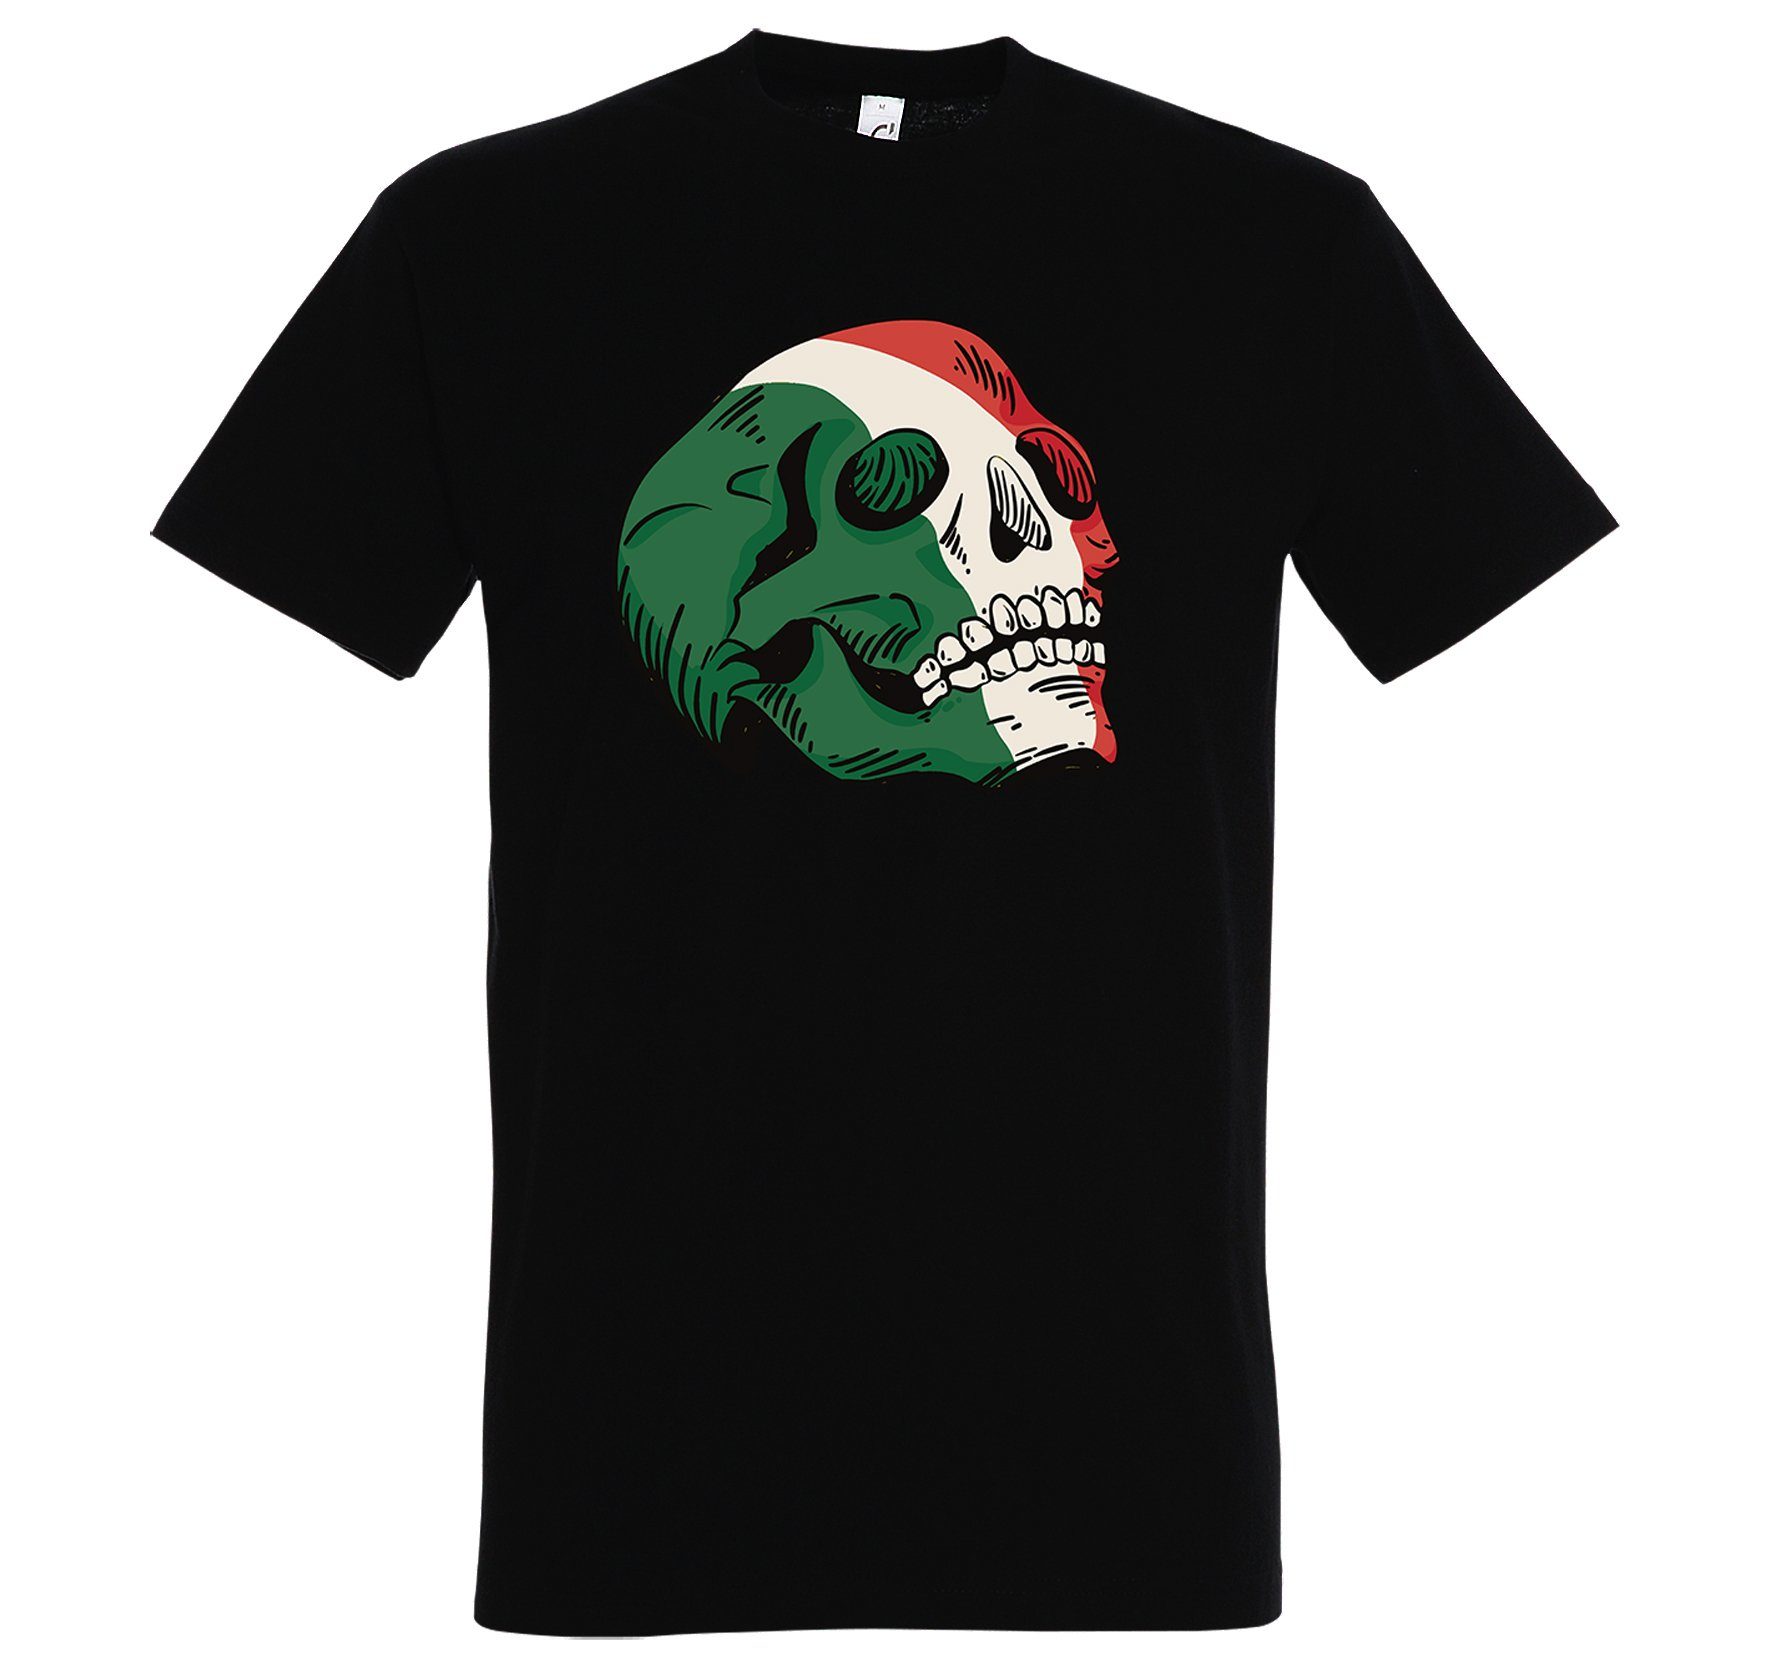 Schwarz mit Schädel Designz T-Shirt Youth Herren Italy trendigem Frontprint Shirt